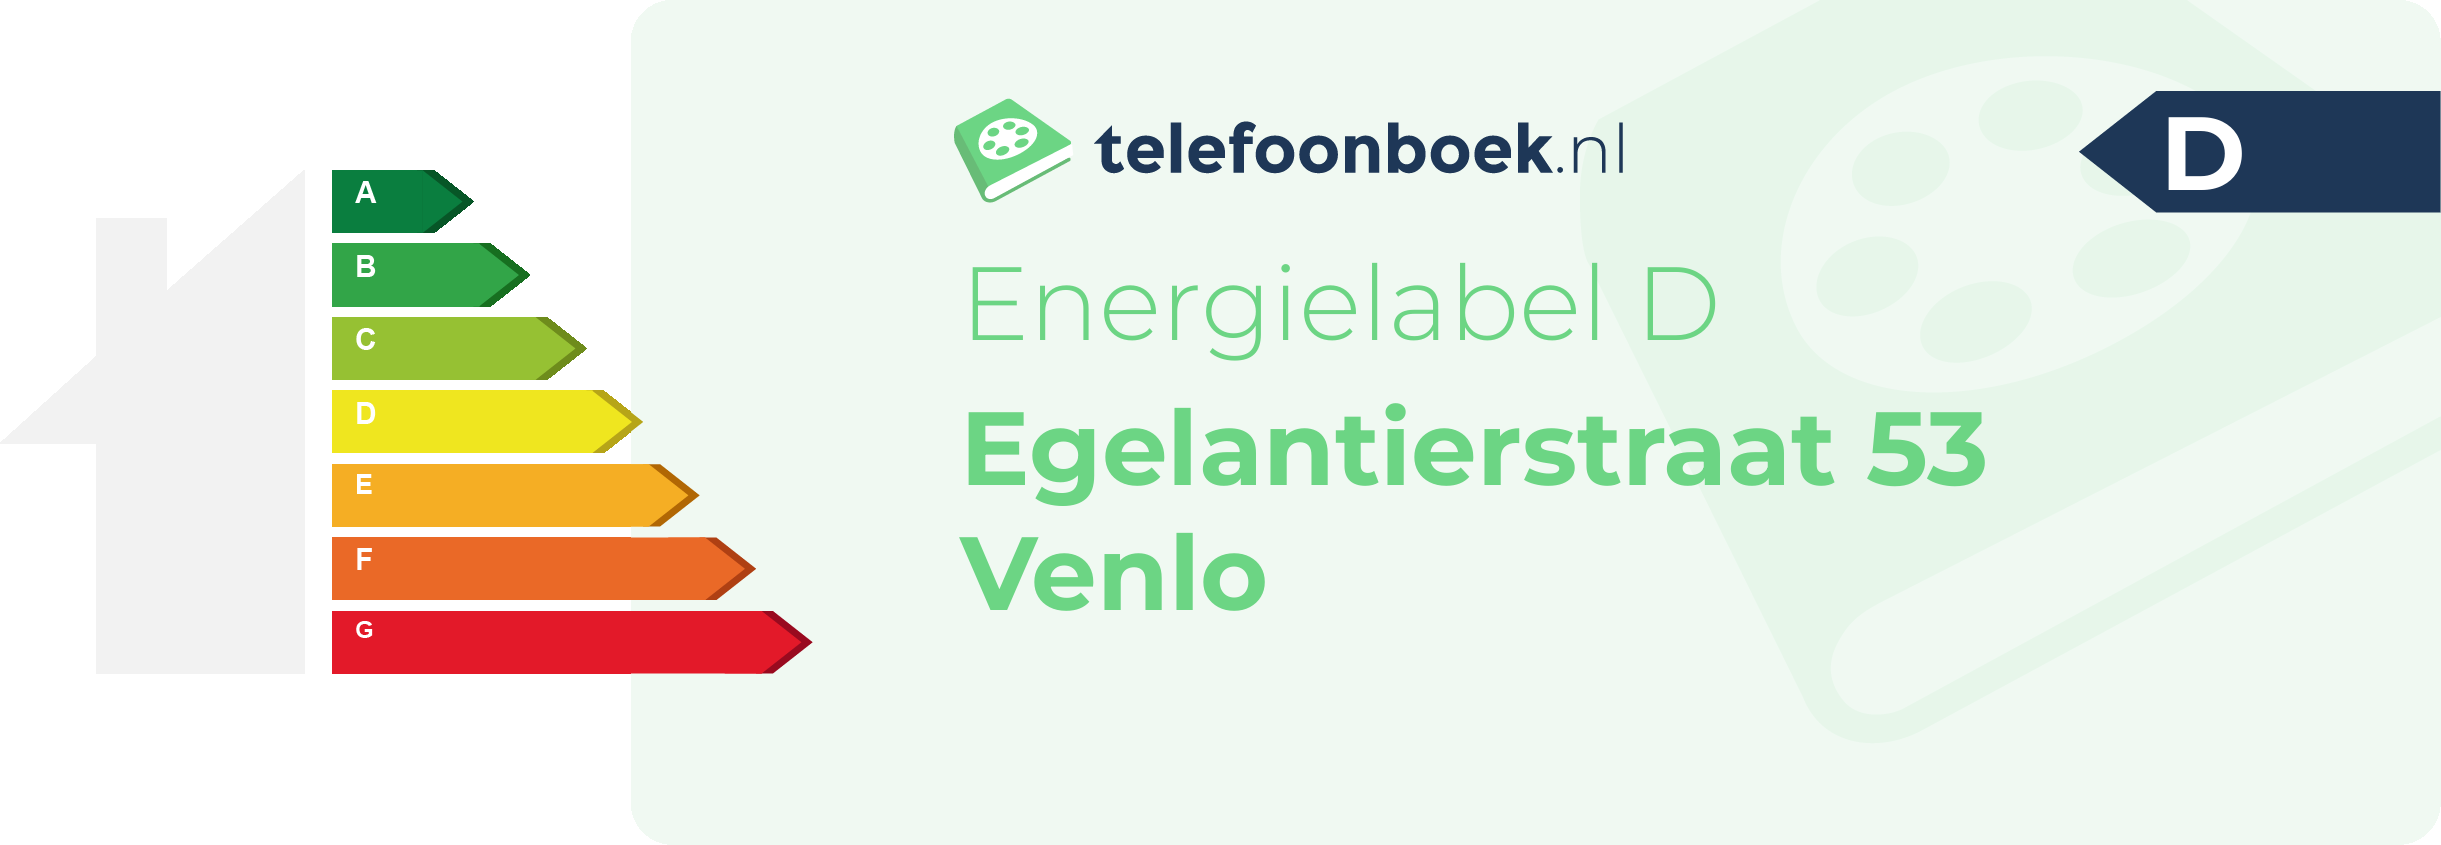 Energielabel Egelantierstraat 53 Venlo